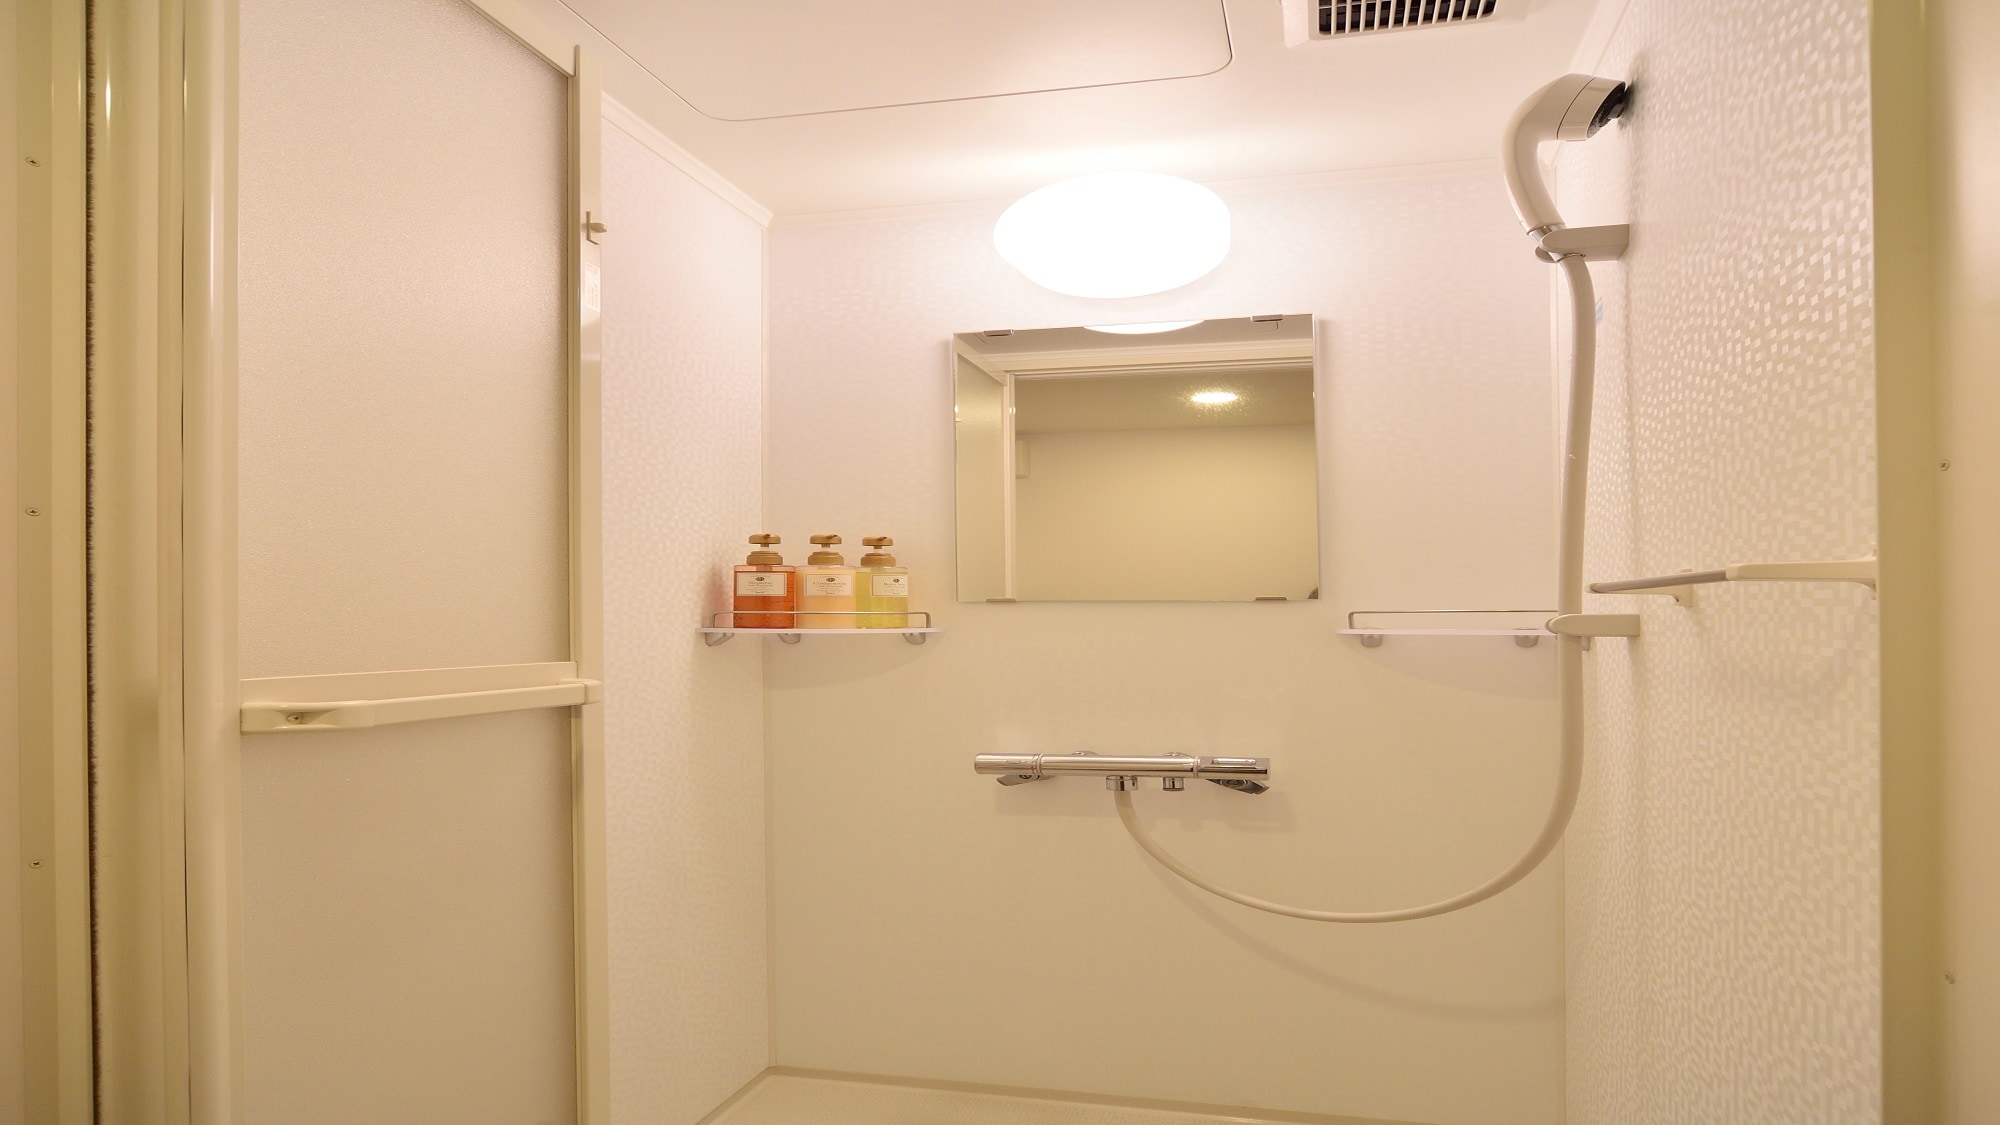 ◆ ตู้อาบน้ำฝักบัว (ห้องคู่, ห้องควีน, ห้องคอมฟอร์ท, ห้องเตียงแฝด)